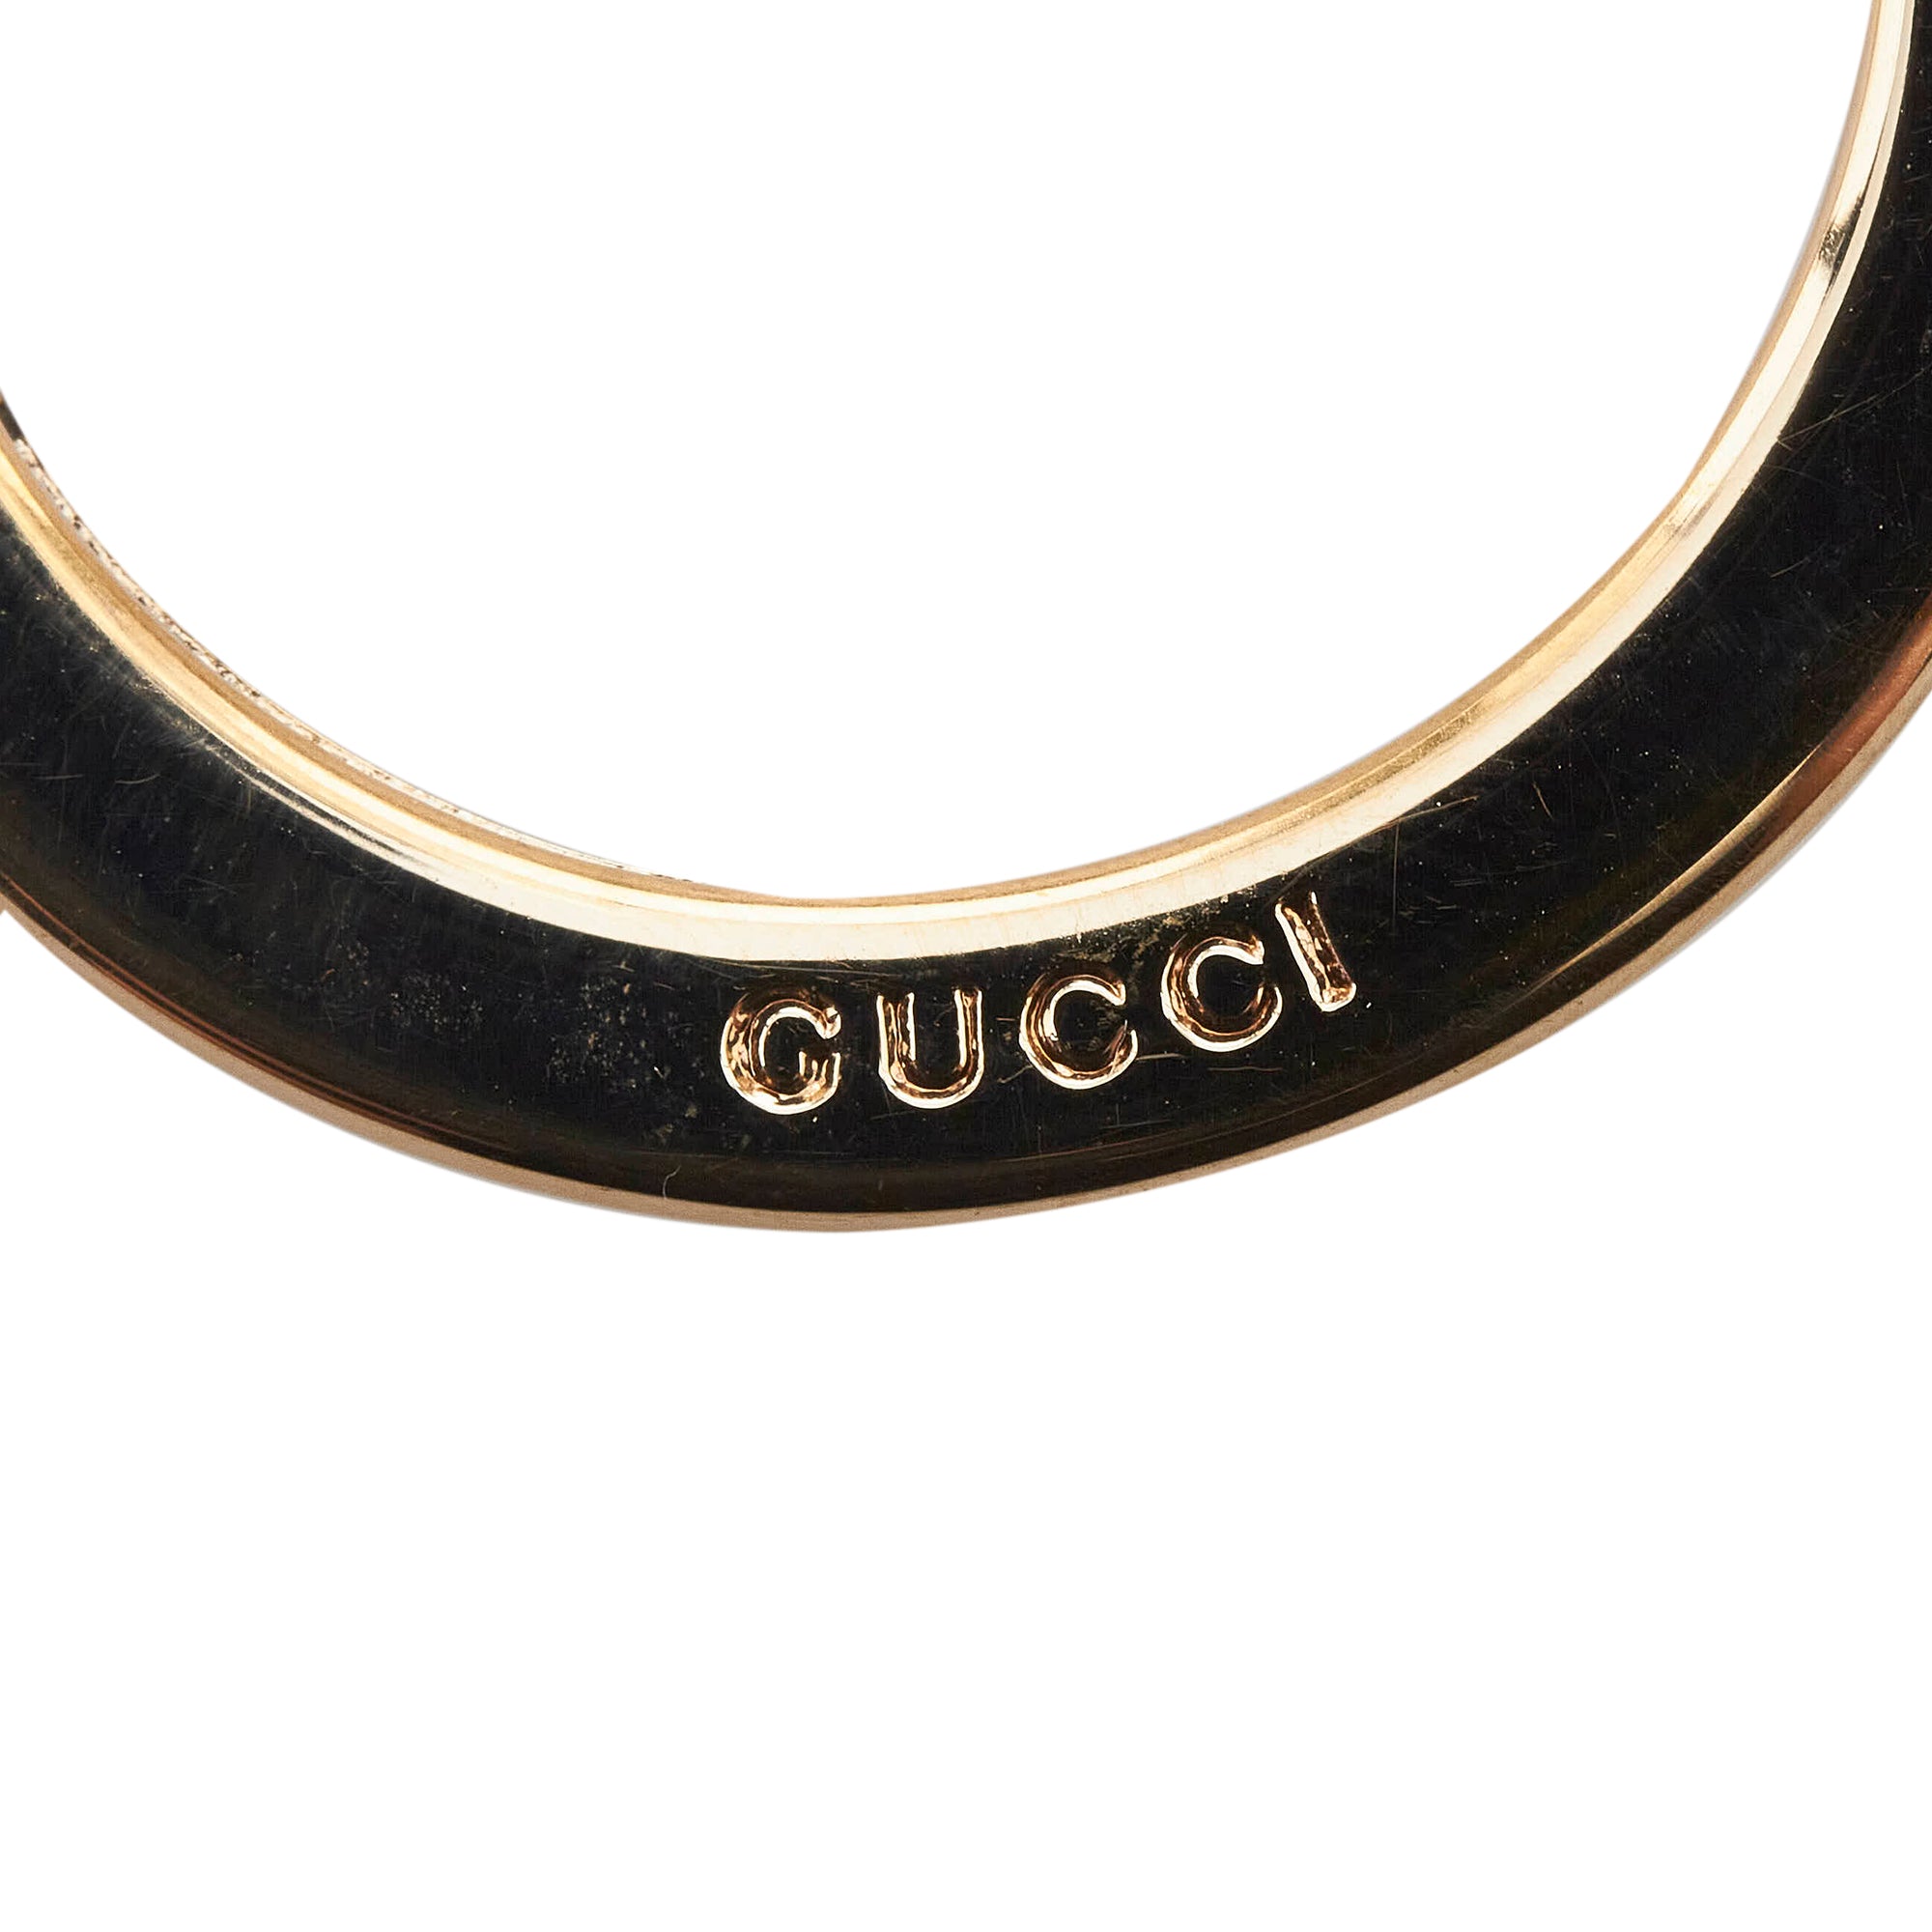 Gucci Interlocking G Belt Supreme GG Striped Leather Dark Brown